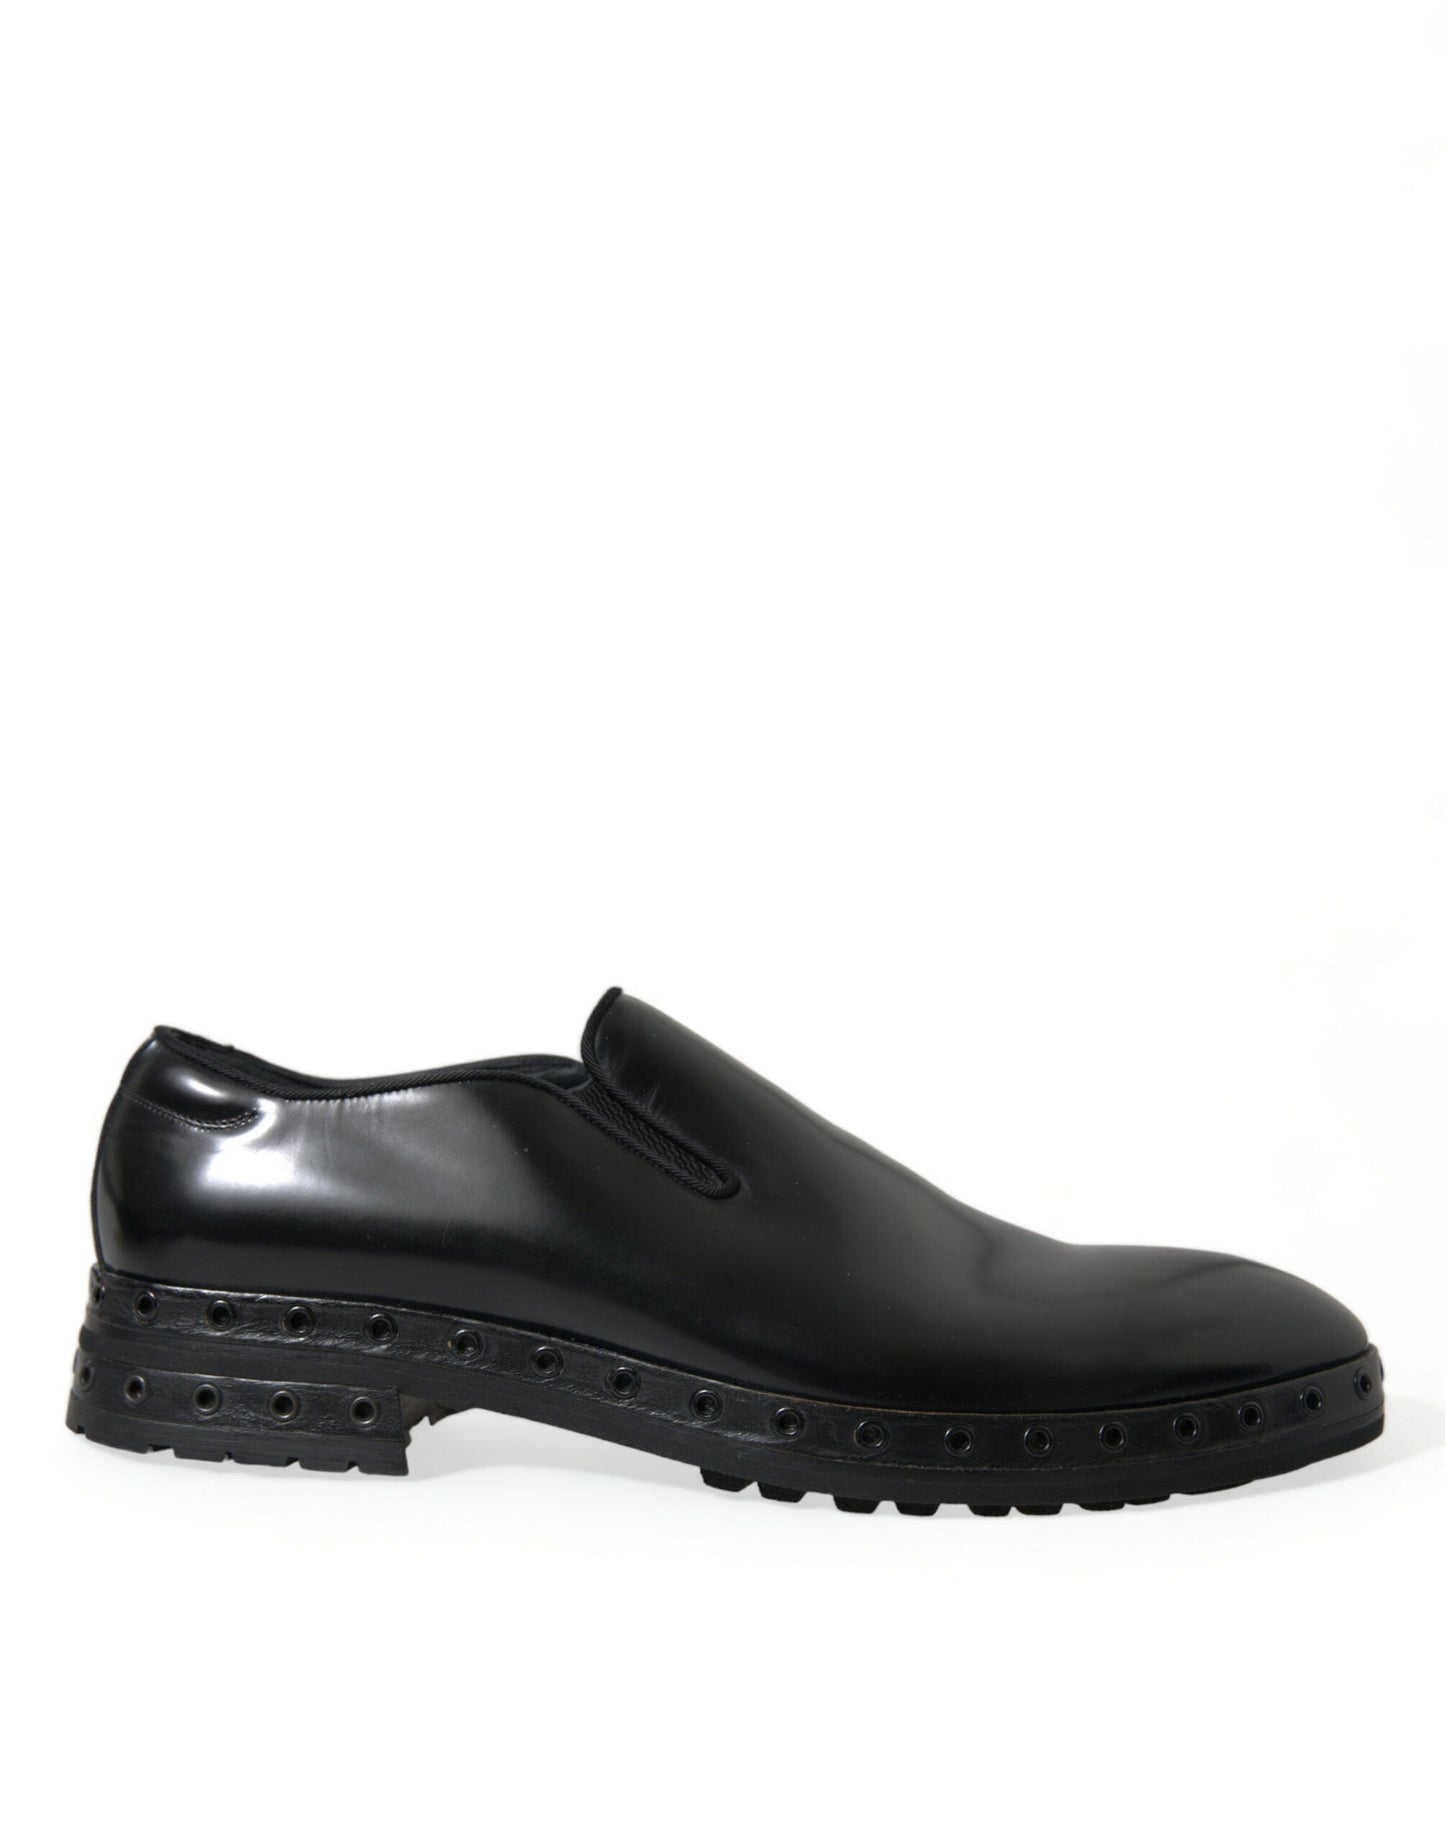 Fashionsarah.com Fashionsarah.com Dolce & Gabbana Black Leather Studded Loafers Dress Shoes